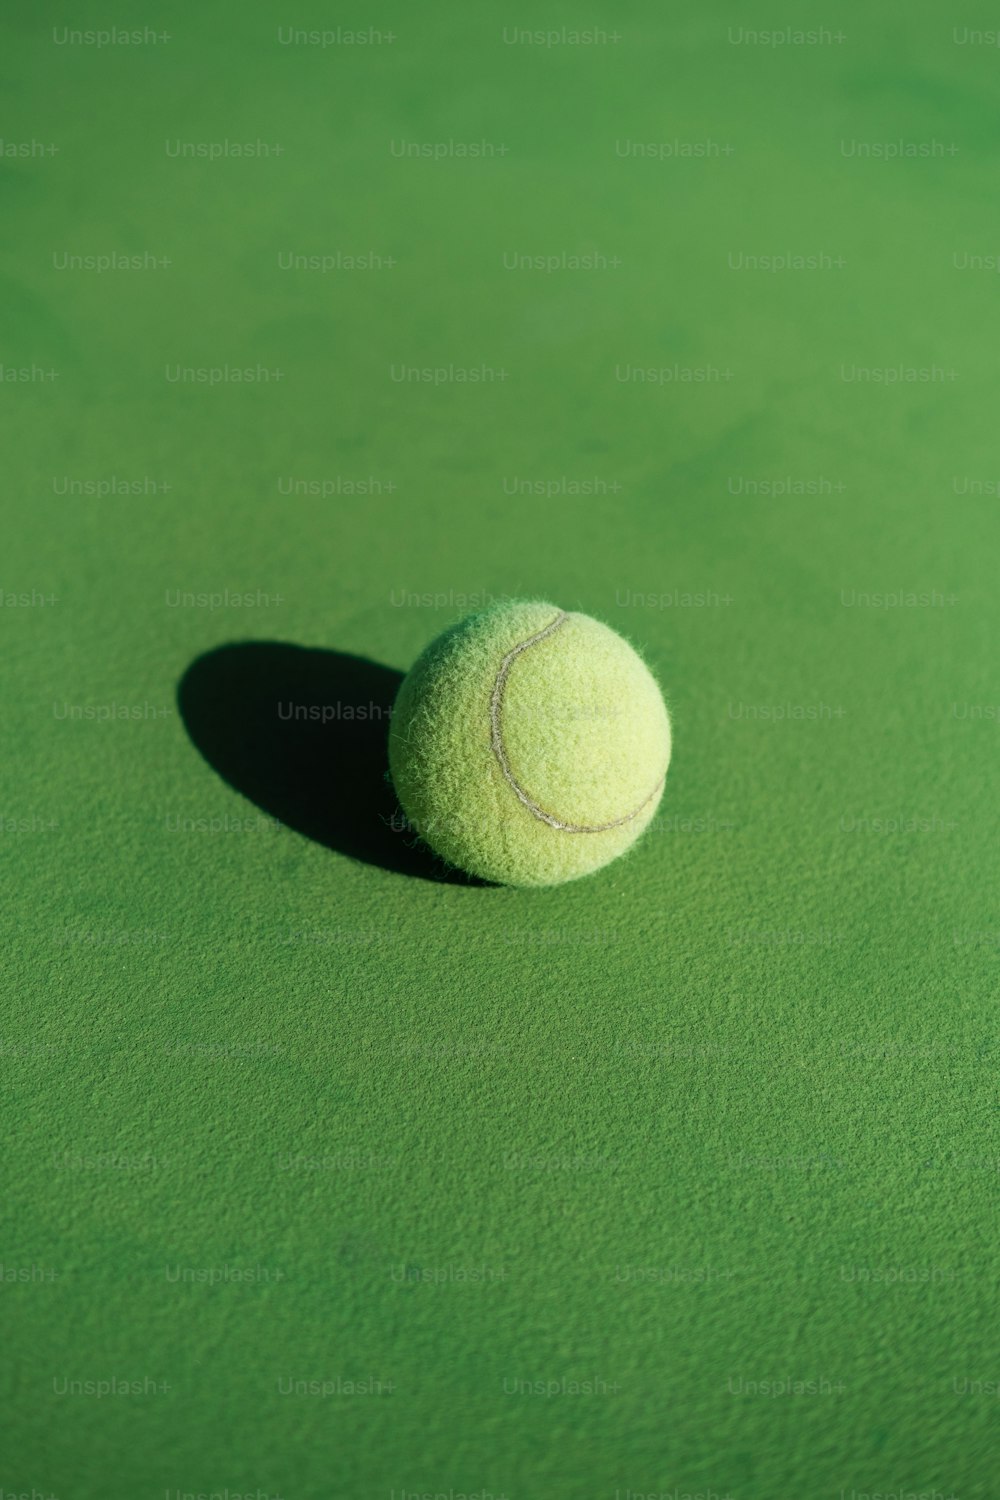 Una pelota de tenis sentada encima de una cancha verde